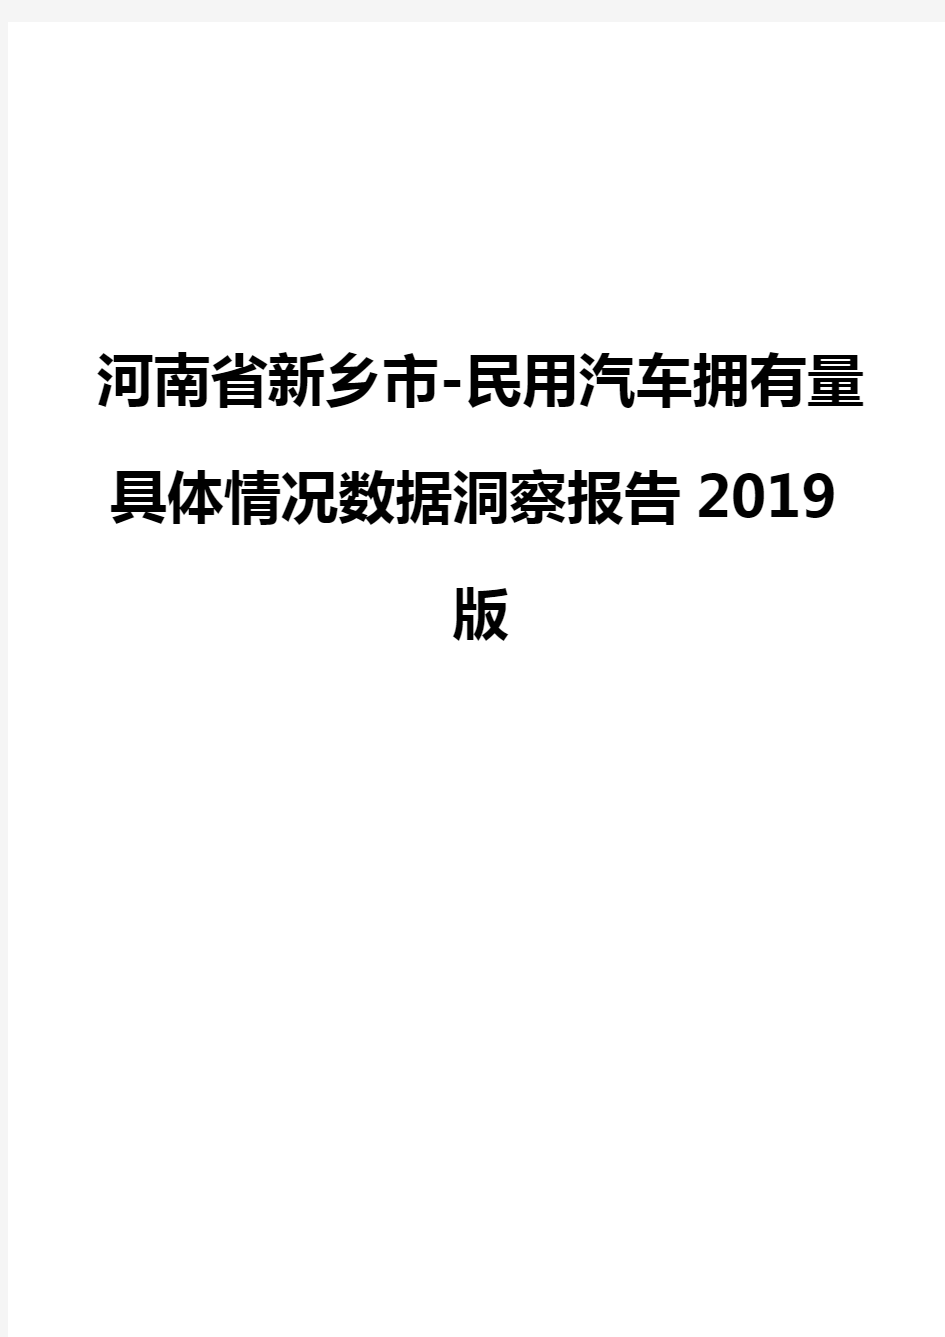 河南省新乡市-民用汽车拥有量具体情况数据洞察报告2019版